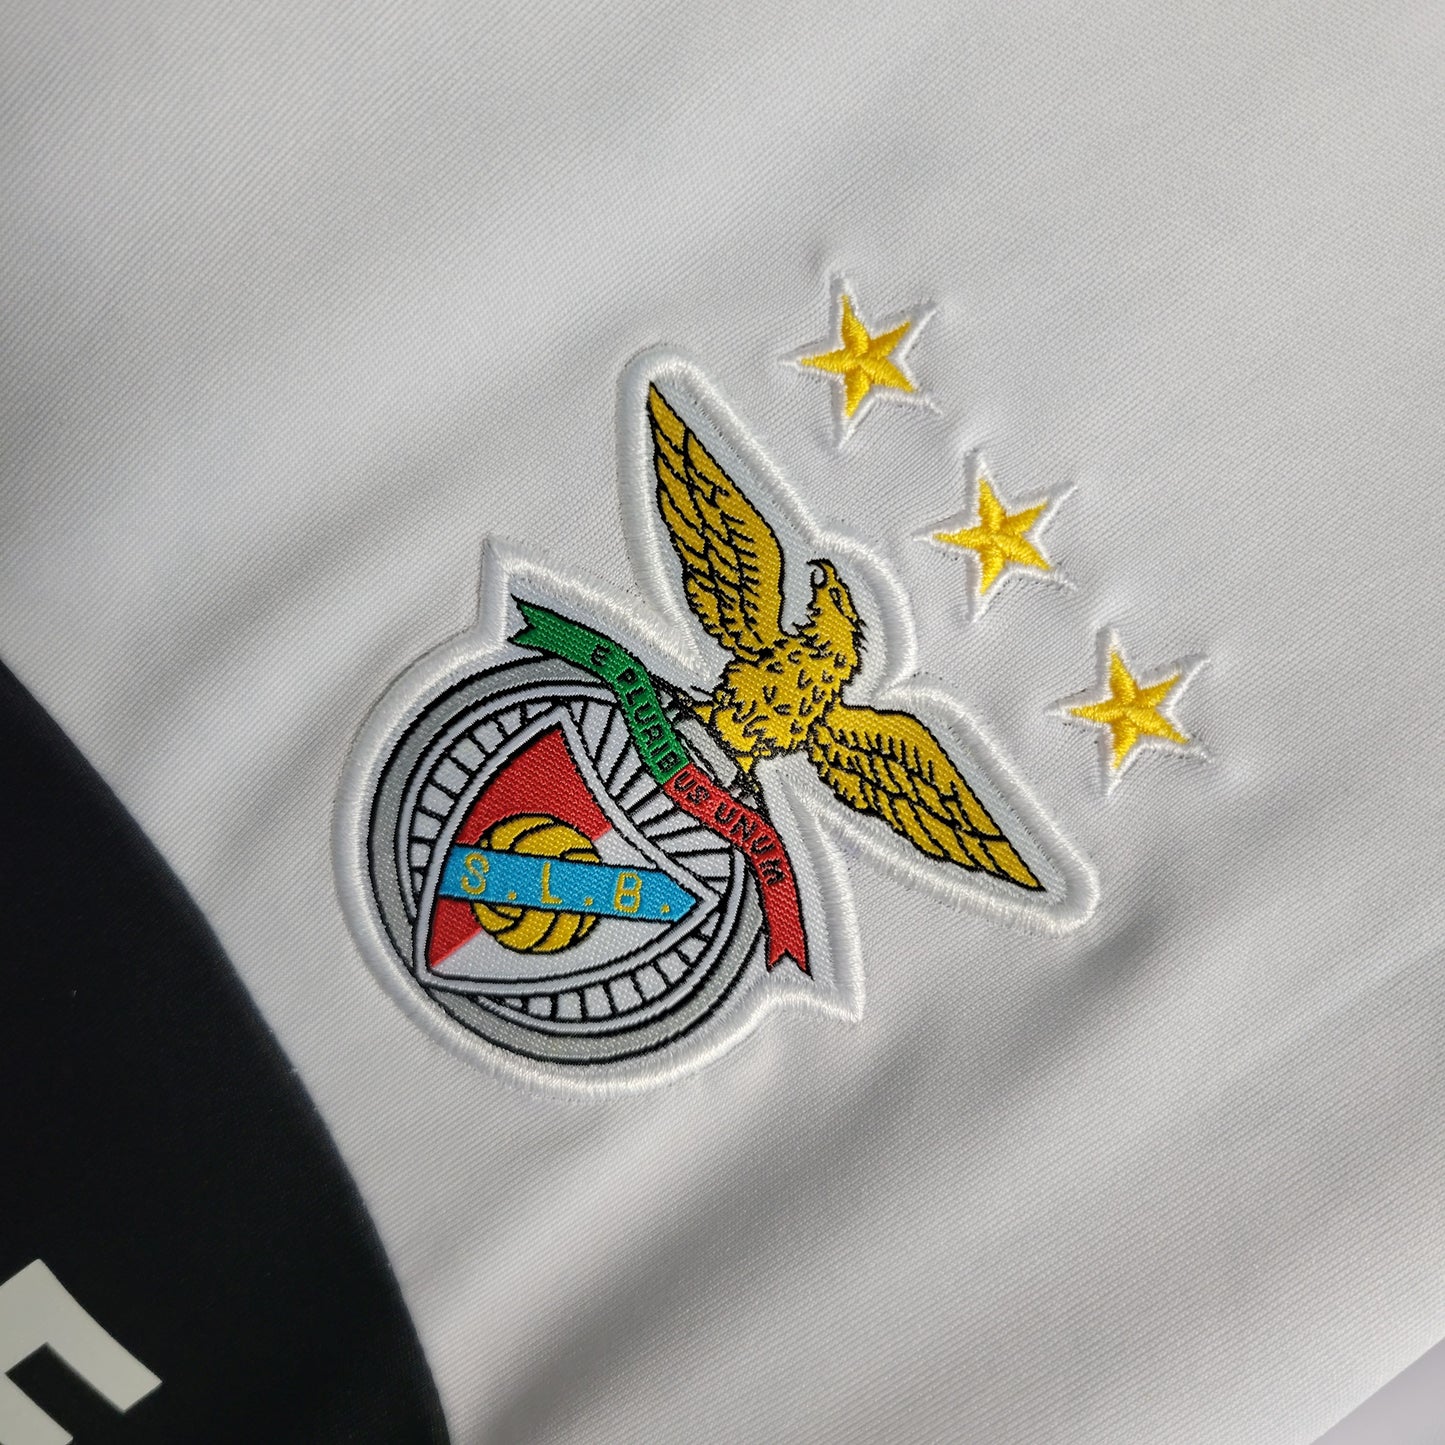 Benfica Alternative 2013/14 Shirt